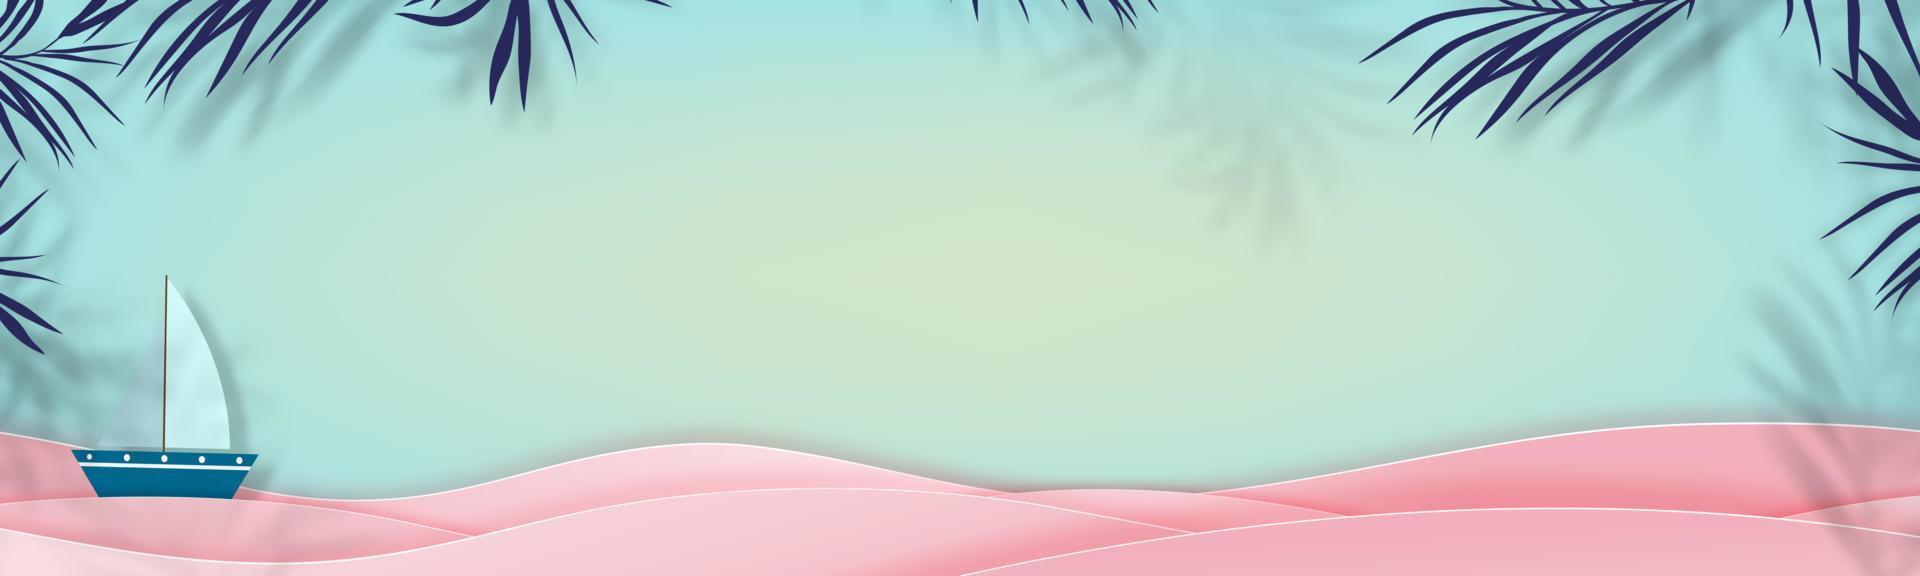 cornice e strato d'onda rosa sul blu mare, illustrazione vettoriale banner verticale carta tagliata elemento di design estivo tropicale per la vendita o la promozione